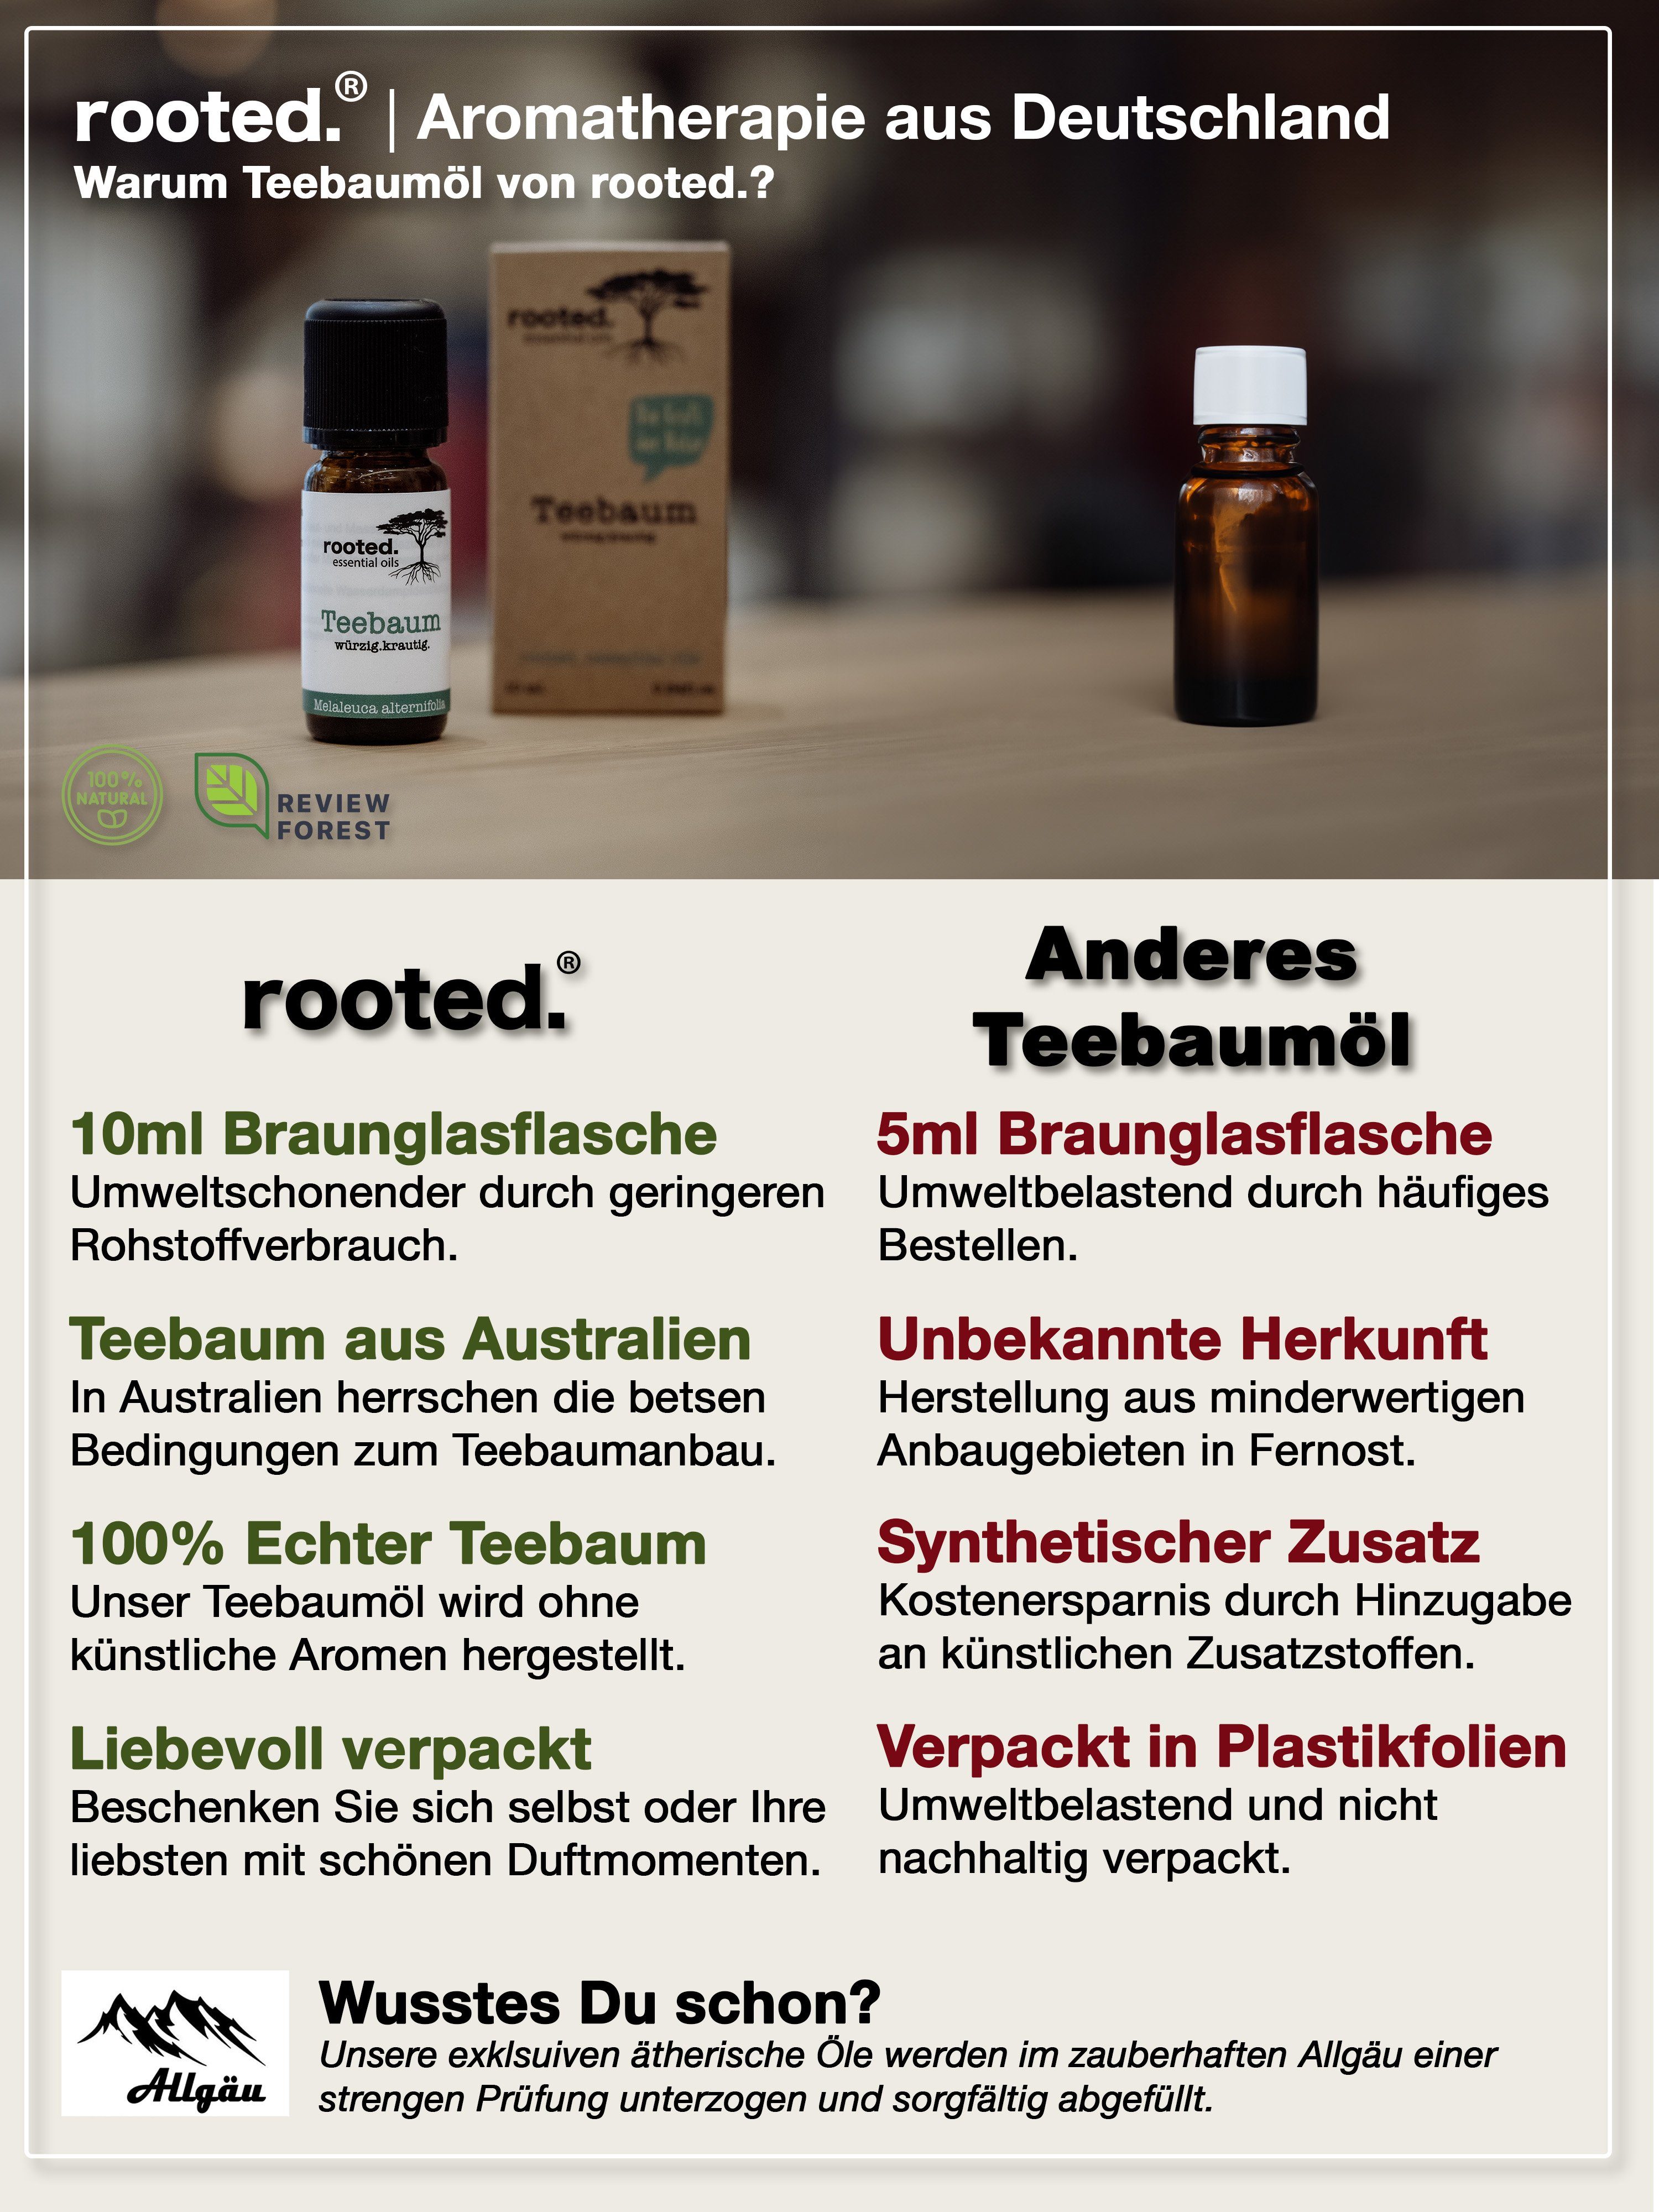 10ml rooted.®, Körperöl Teebaumöl, rooted. alternifolia Melaleuca ätherisches